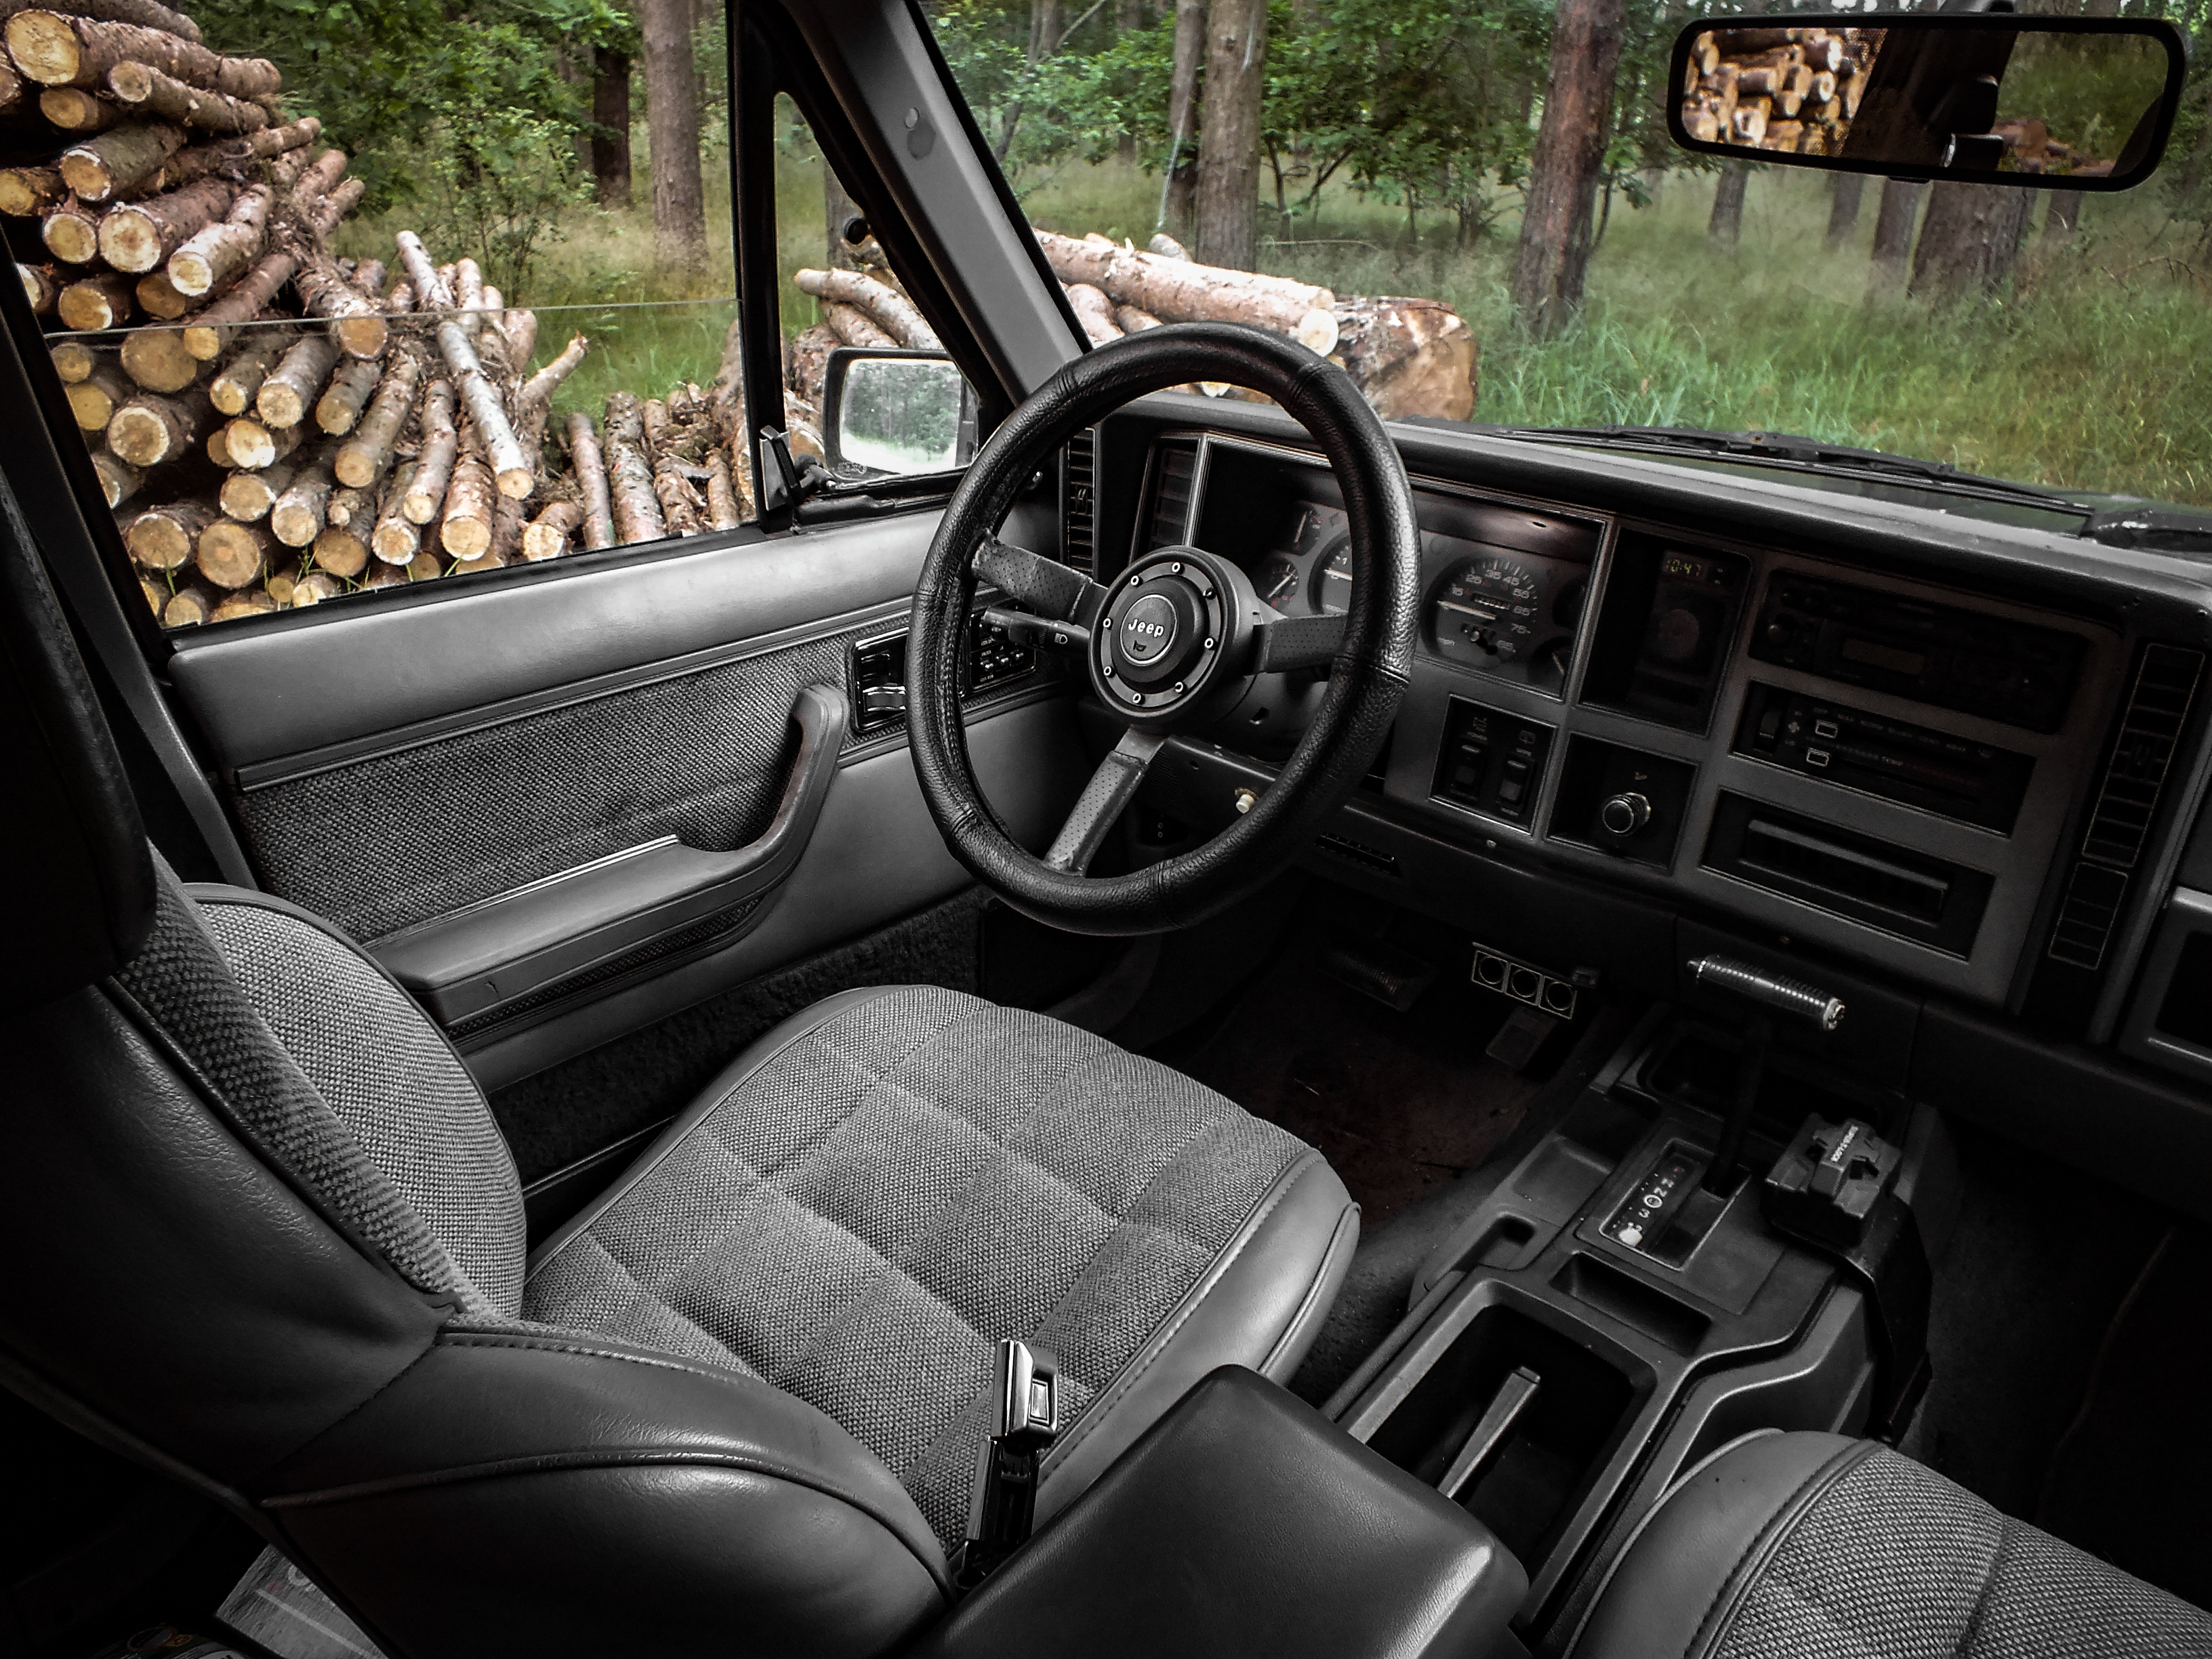 1989 Jeep Cherokee 4.0 | #Szczecinskidrajwer